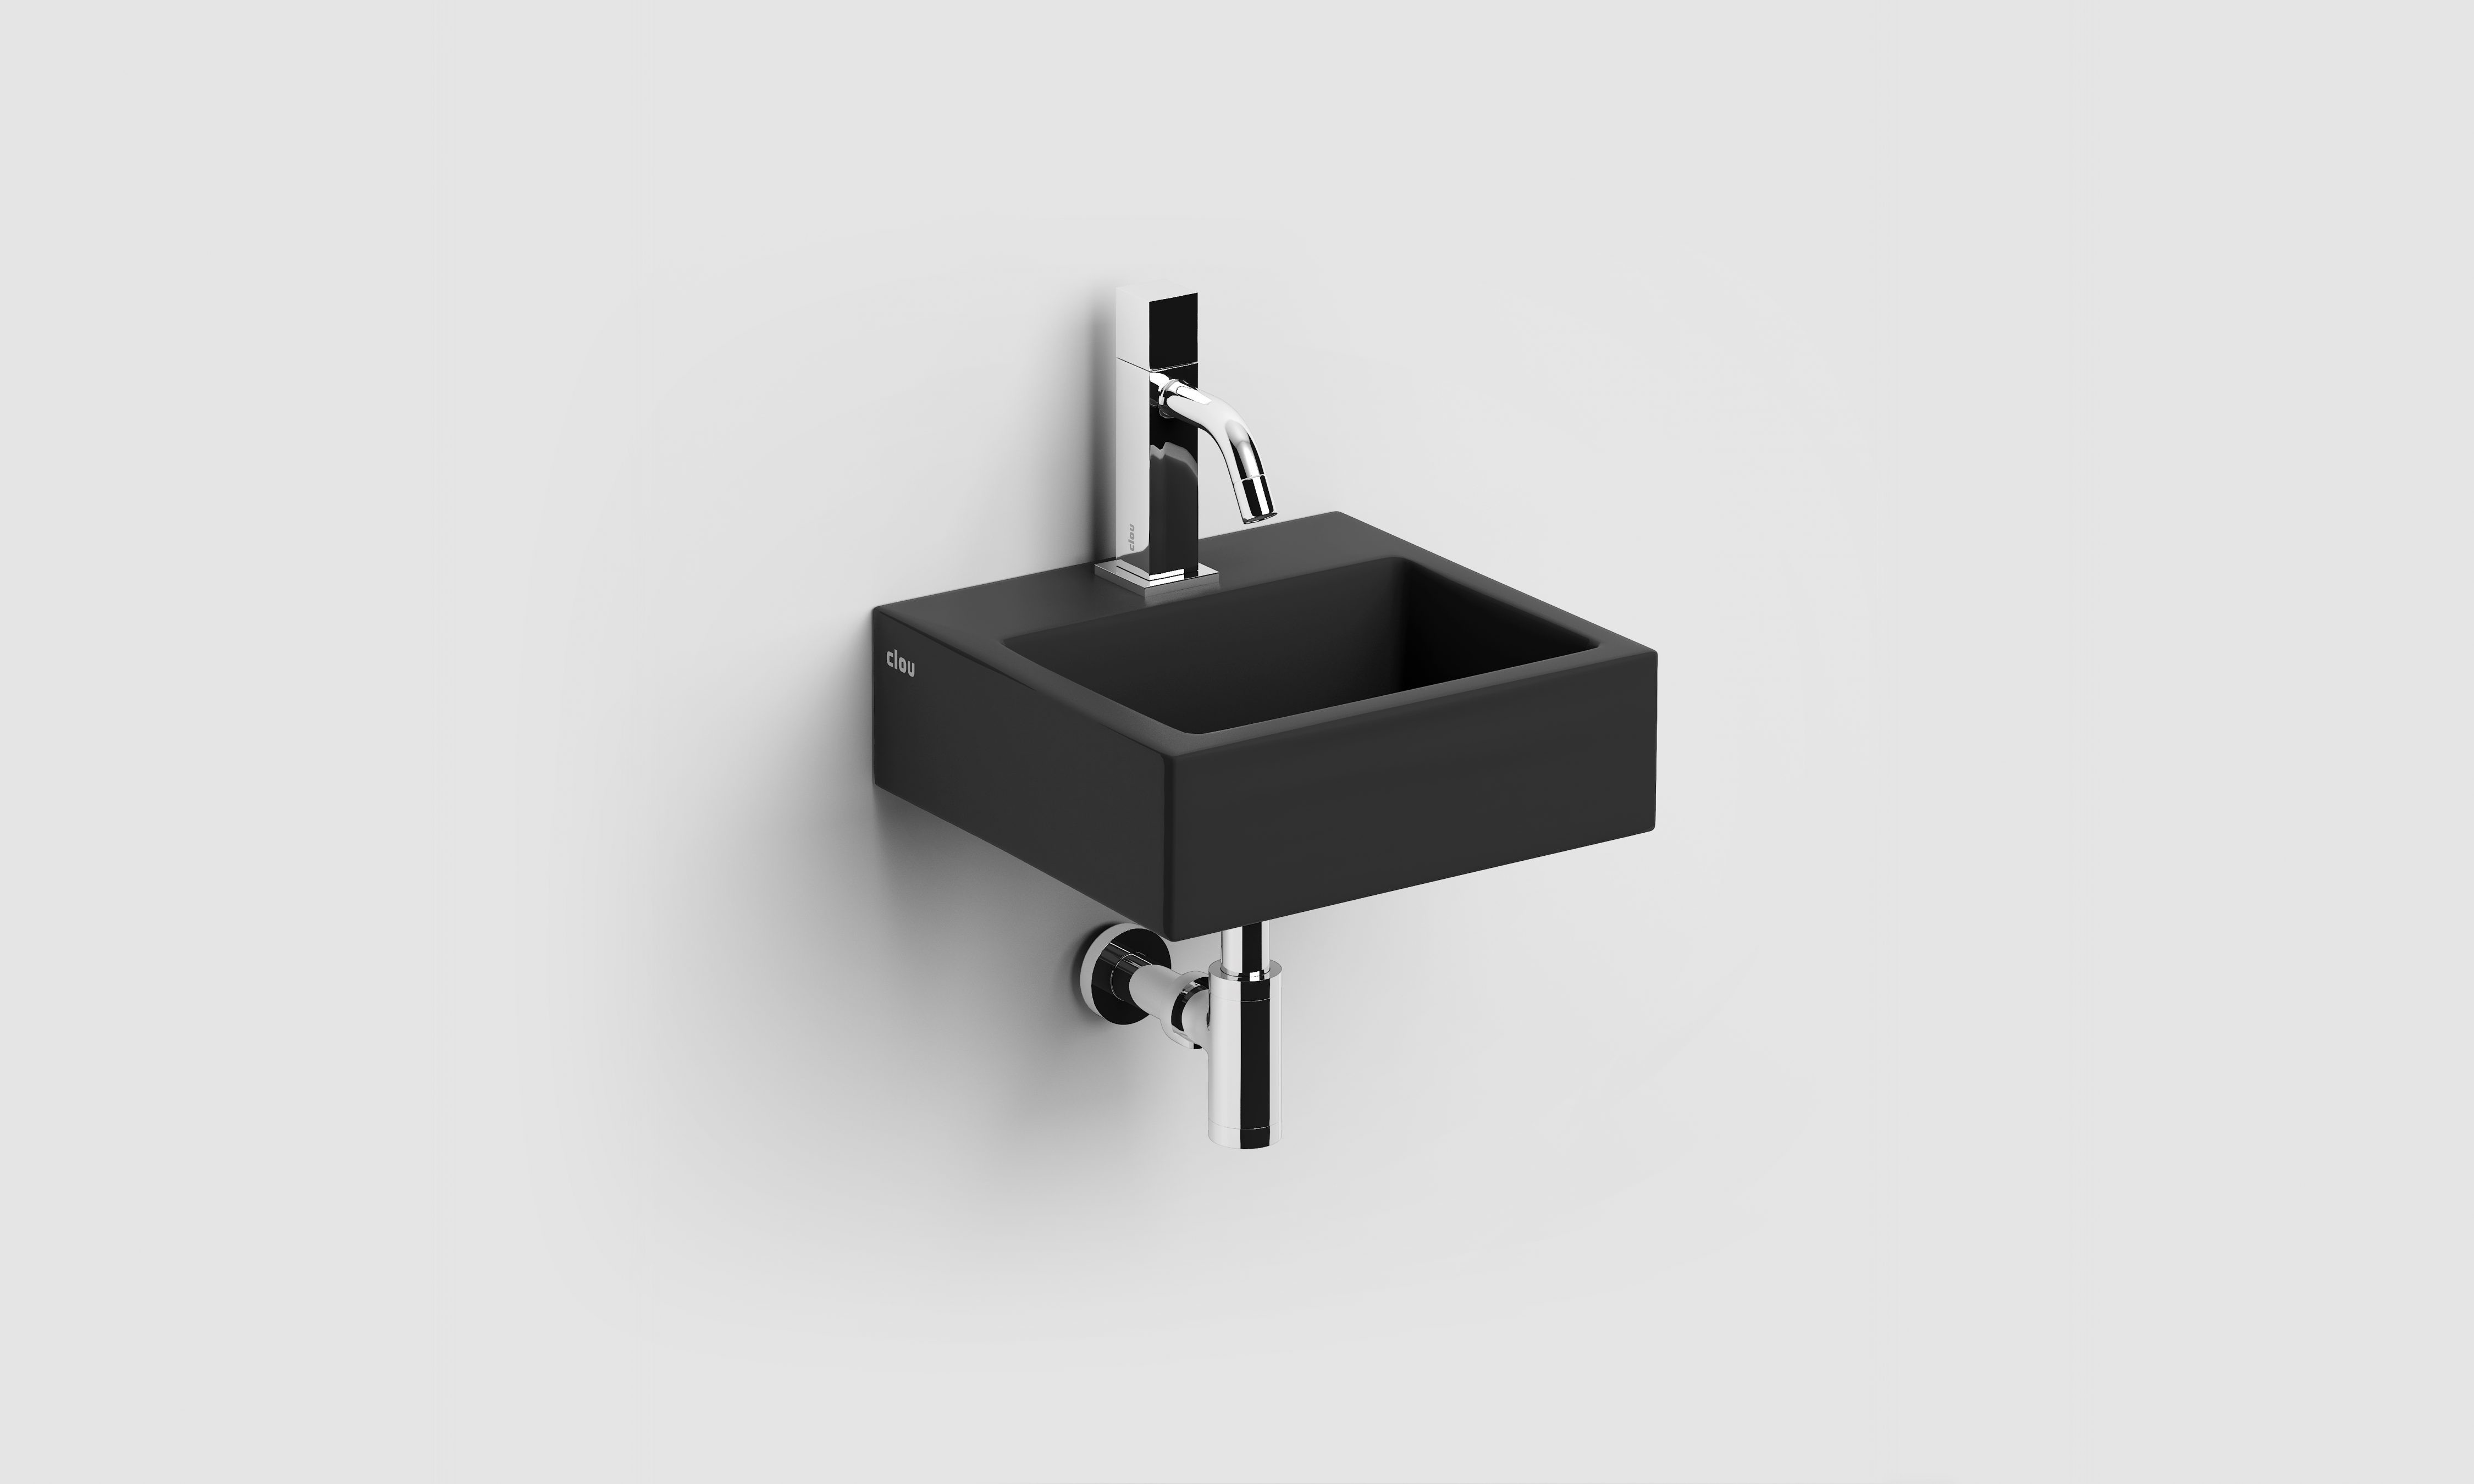 CL/03.03030 - Clou bath findings - Sanitair voor design badkamers